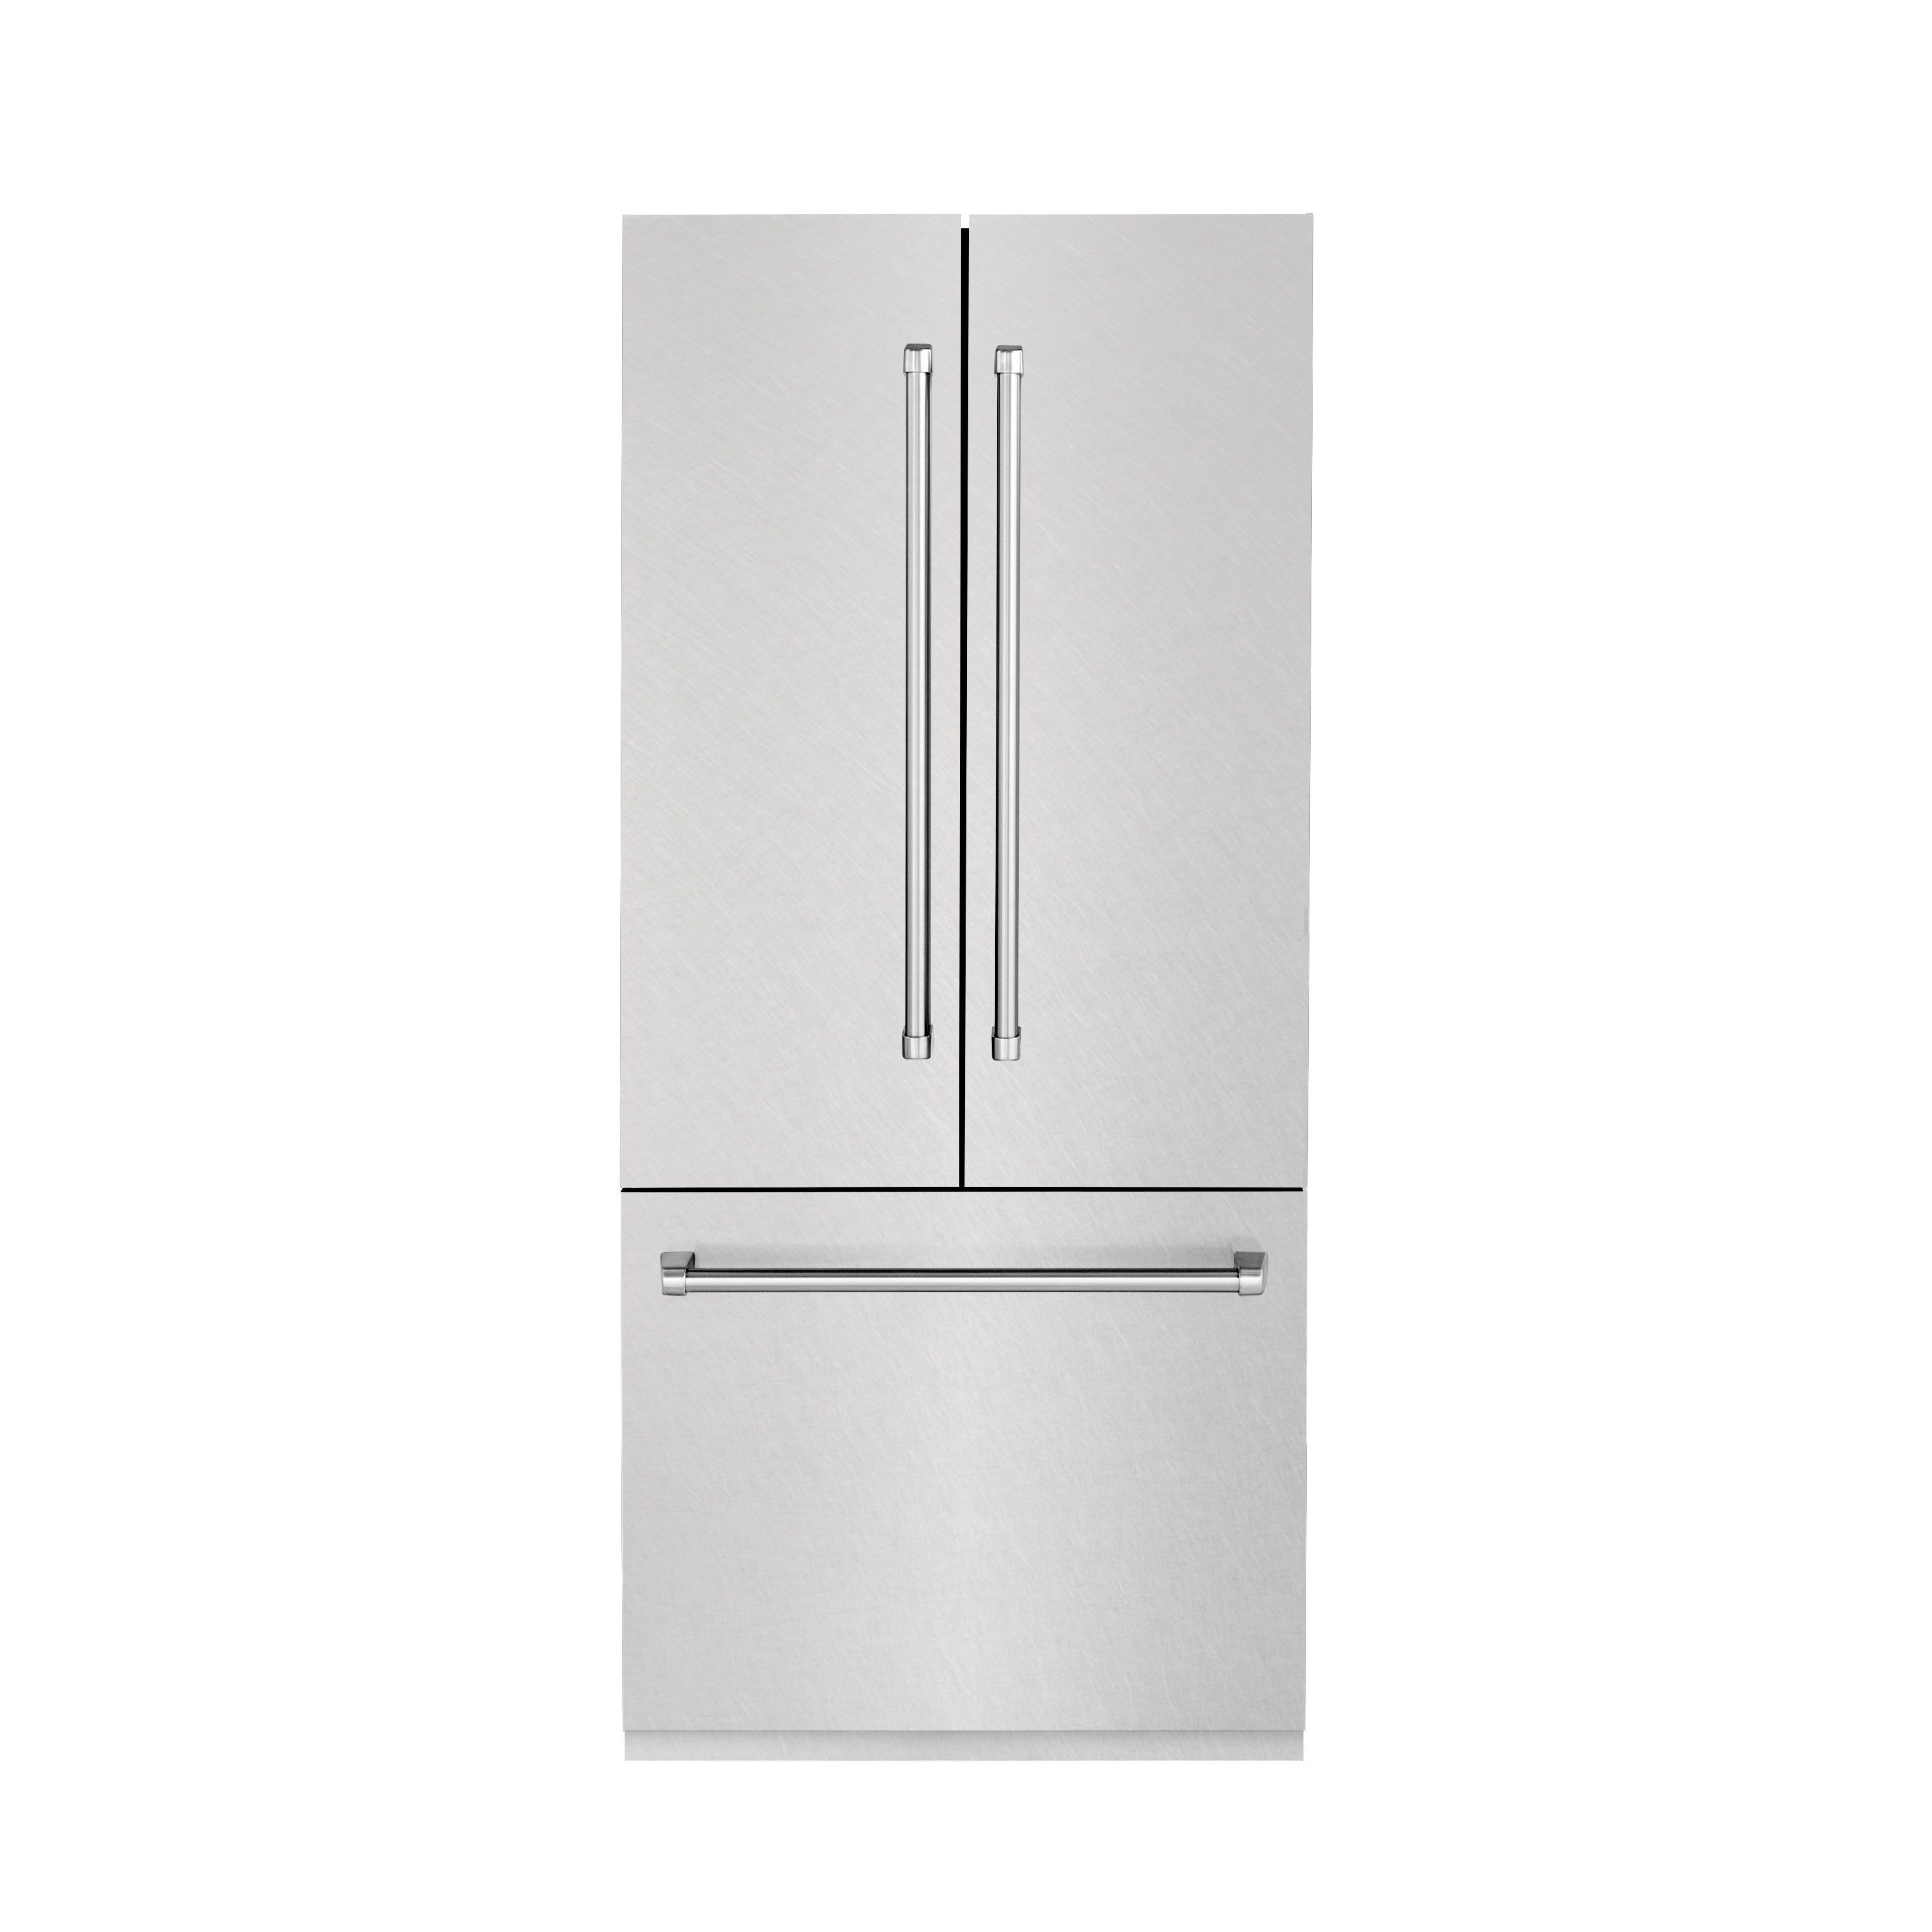 ZLINE 36" 19.6 cu. ft. Built-In 3-Door French Door Refrigerator with Internal Water and Ice Dispenser in Fingerprint Resistant Stainless Steel